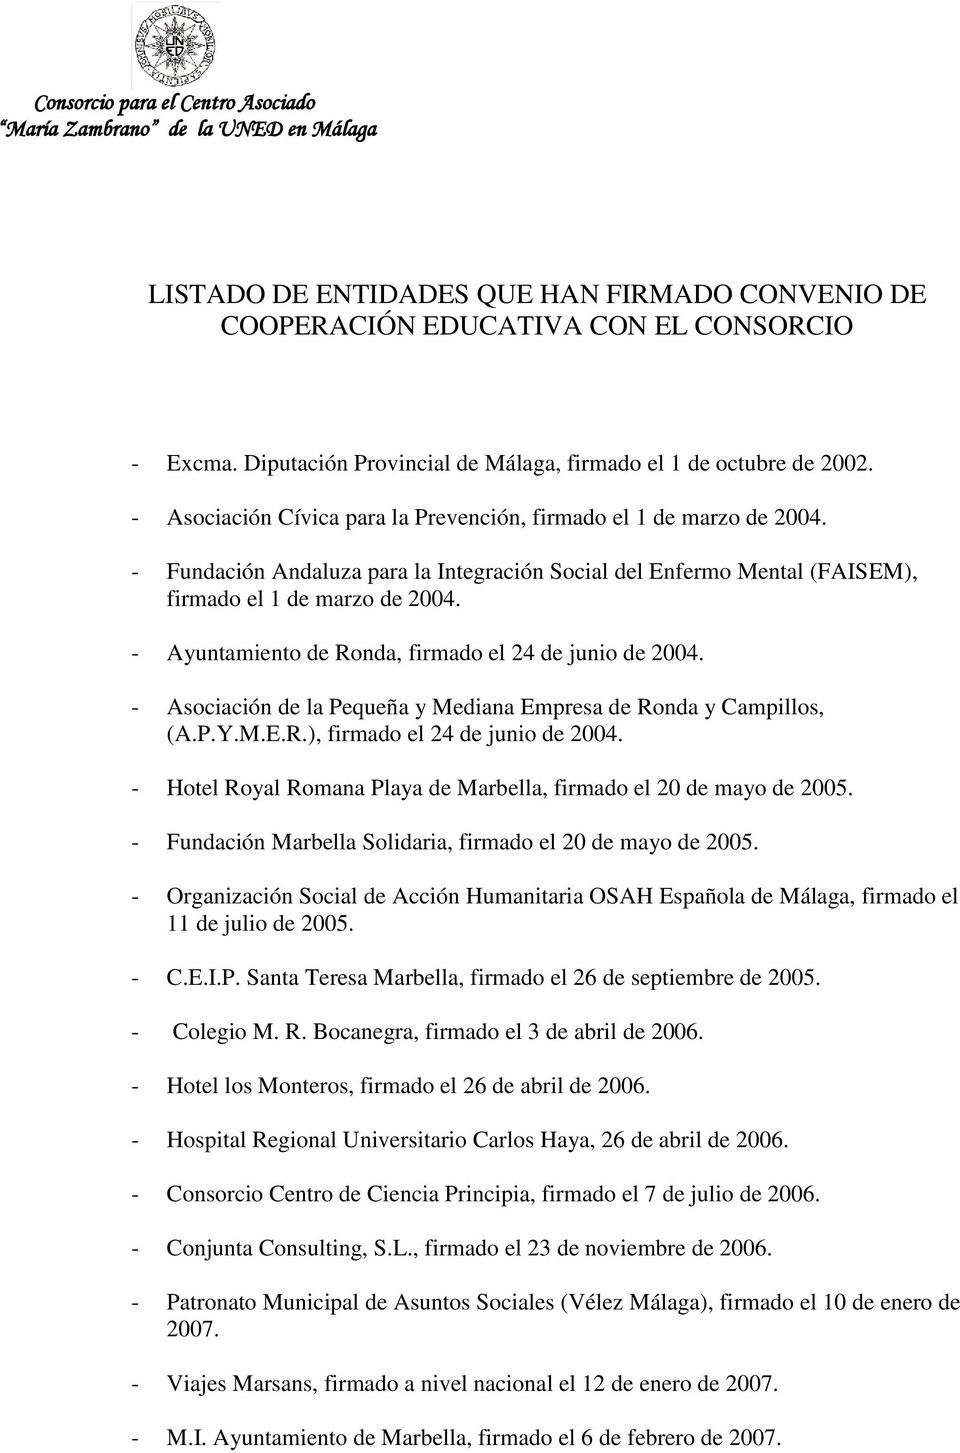 - Fundación Andaluza para la Integración Social del Enfermo Mental (FAISEM), firmado el 1 de marzo de 2004. - Ayuntamiento de Ronda, firmado el 24 de junio de 2004.